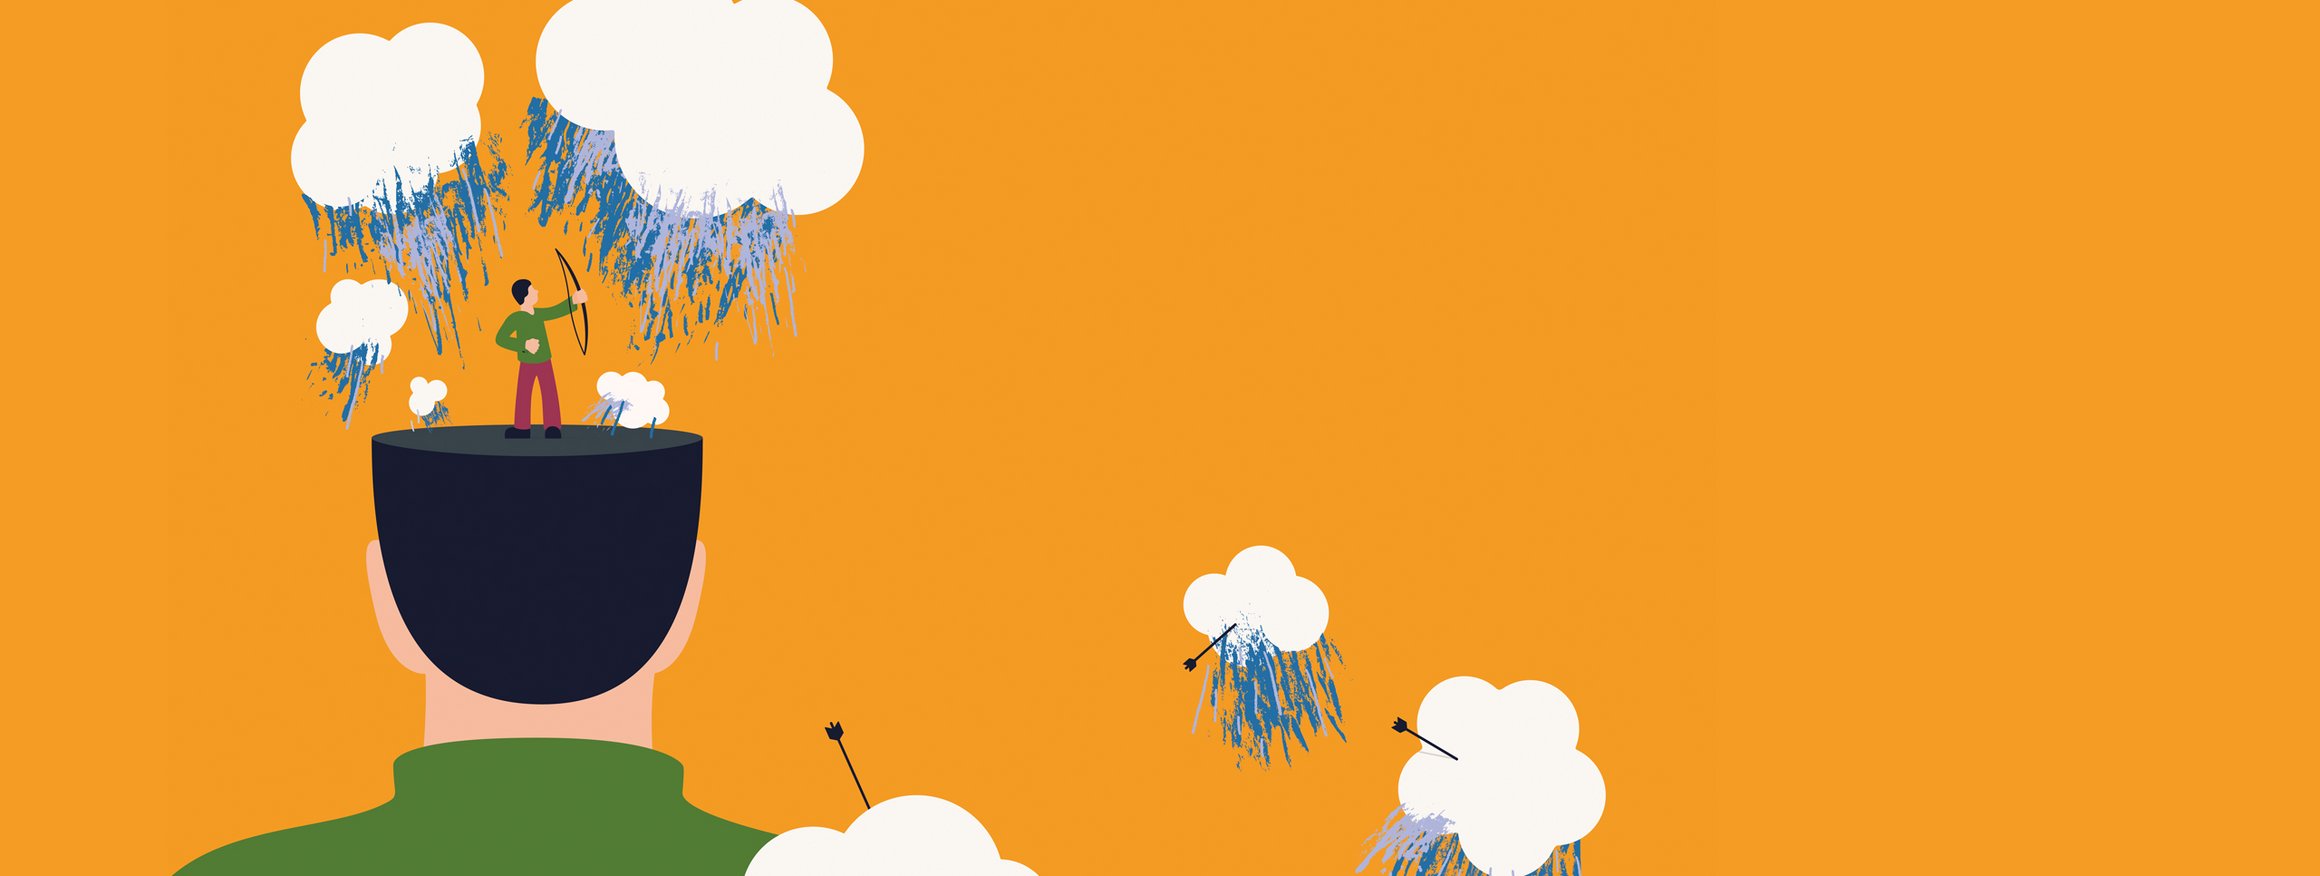 Die Illustration zeigt einen Mann mit einem Bogen, der auf einem Kopf steht und Pfeile auf Regenwolken abschießt